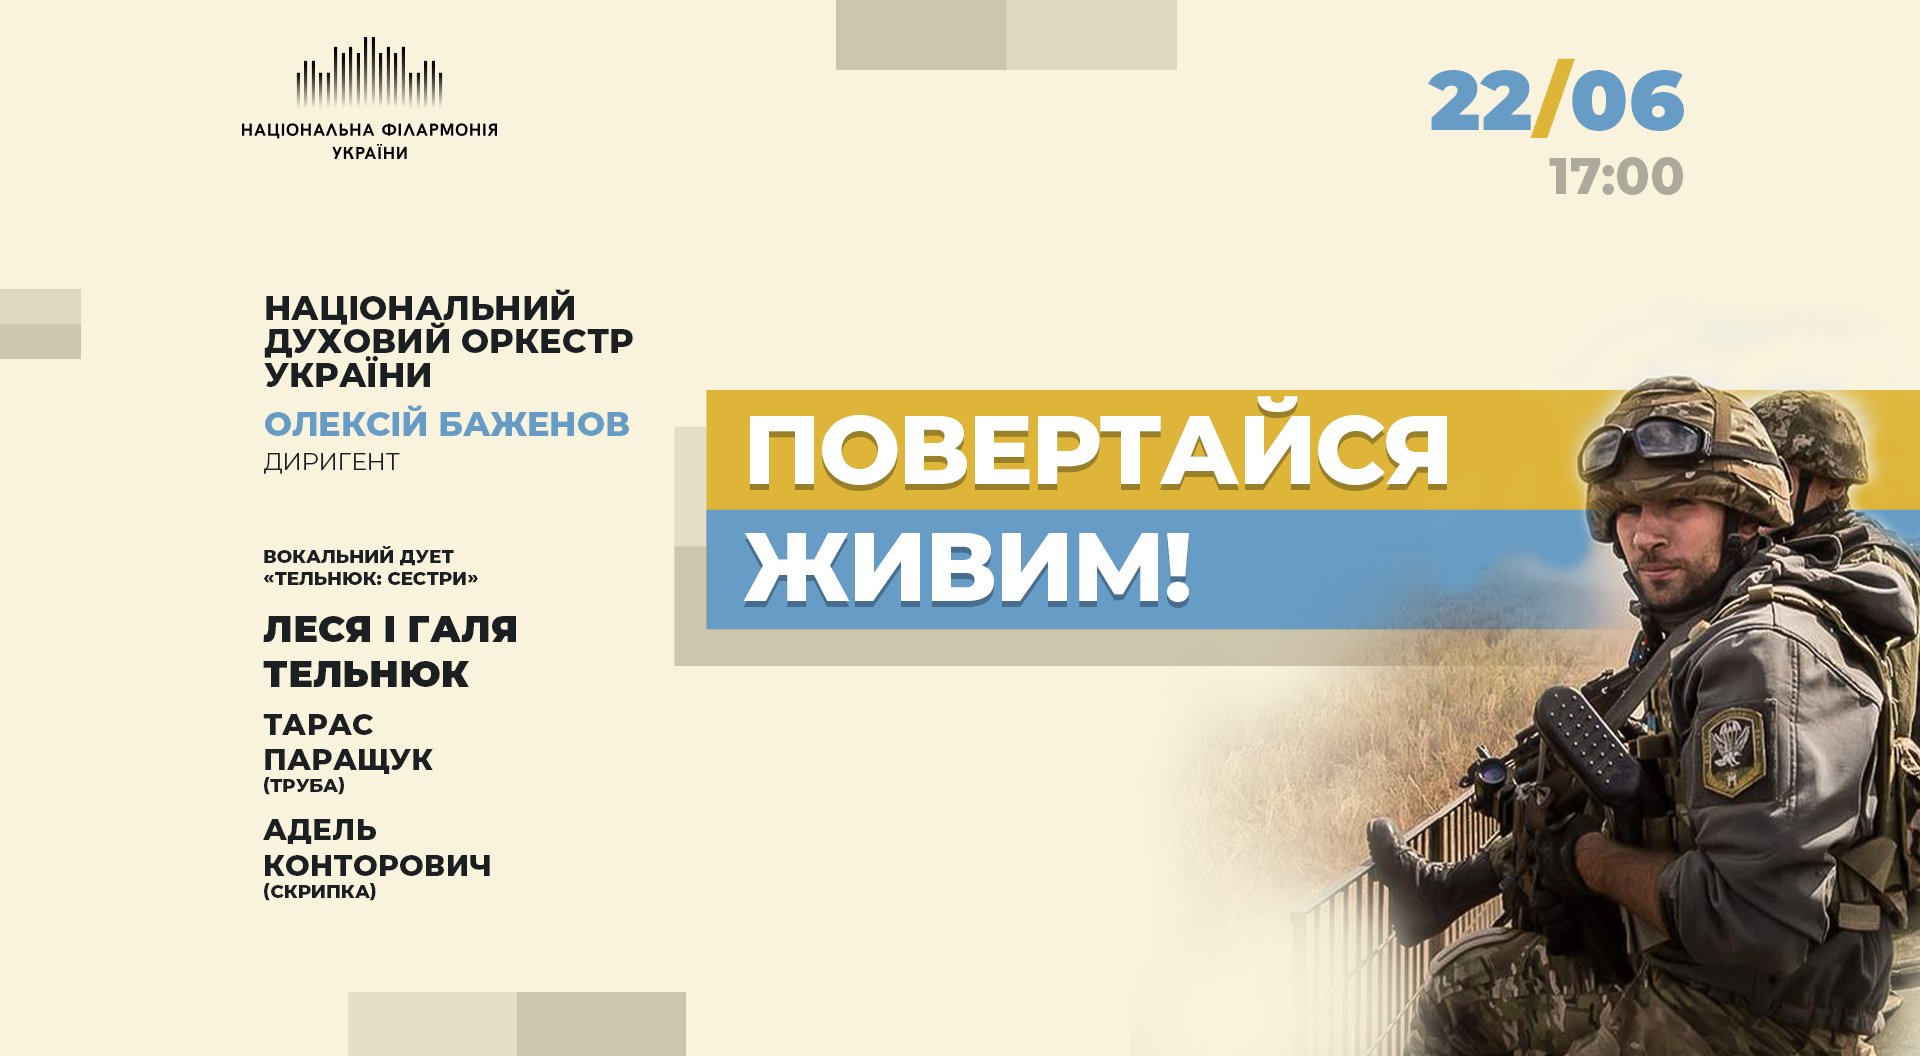 Концерт "Возвращайся живым!". Национальный духовой оркестр Украины